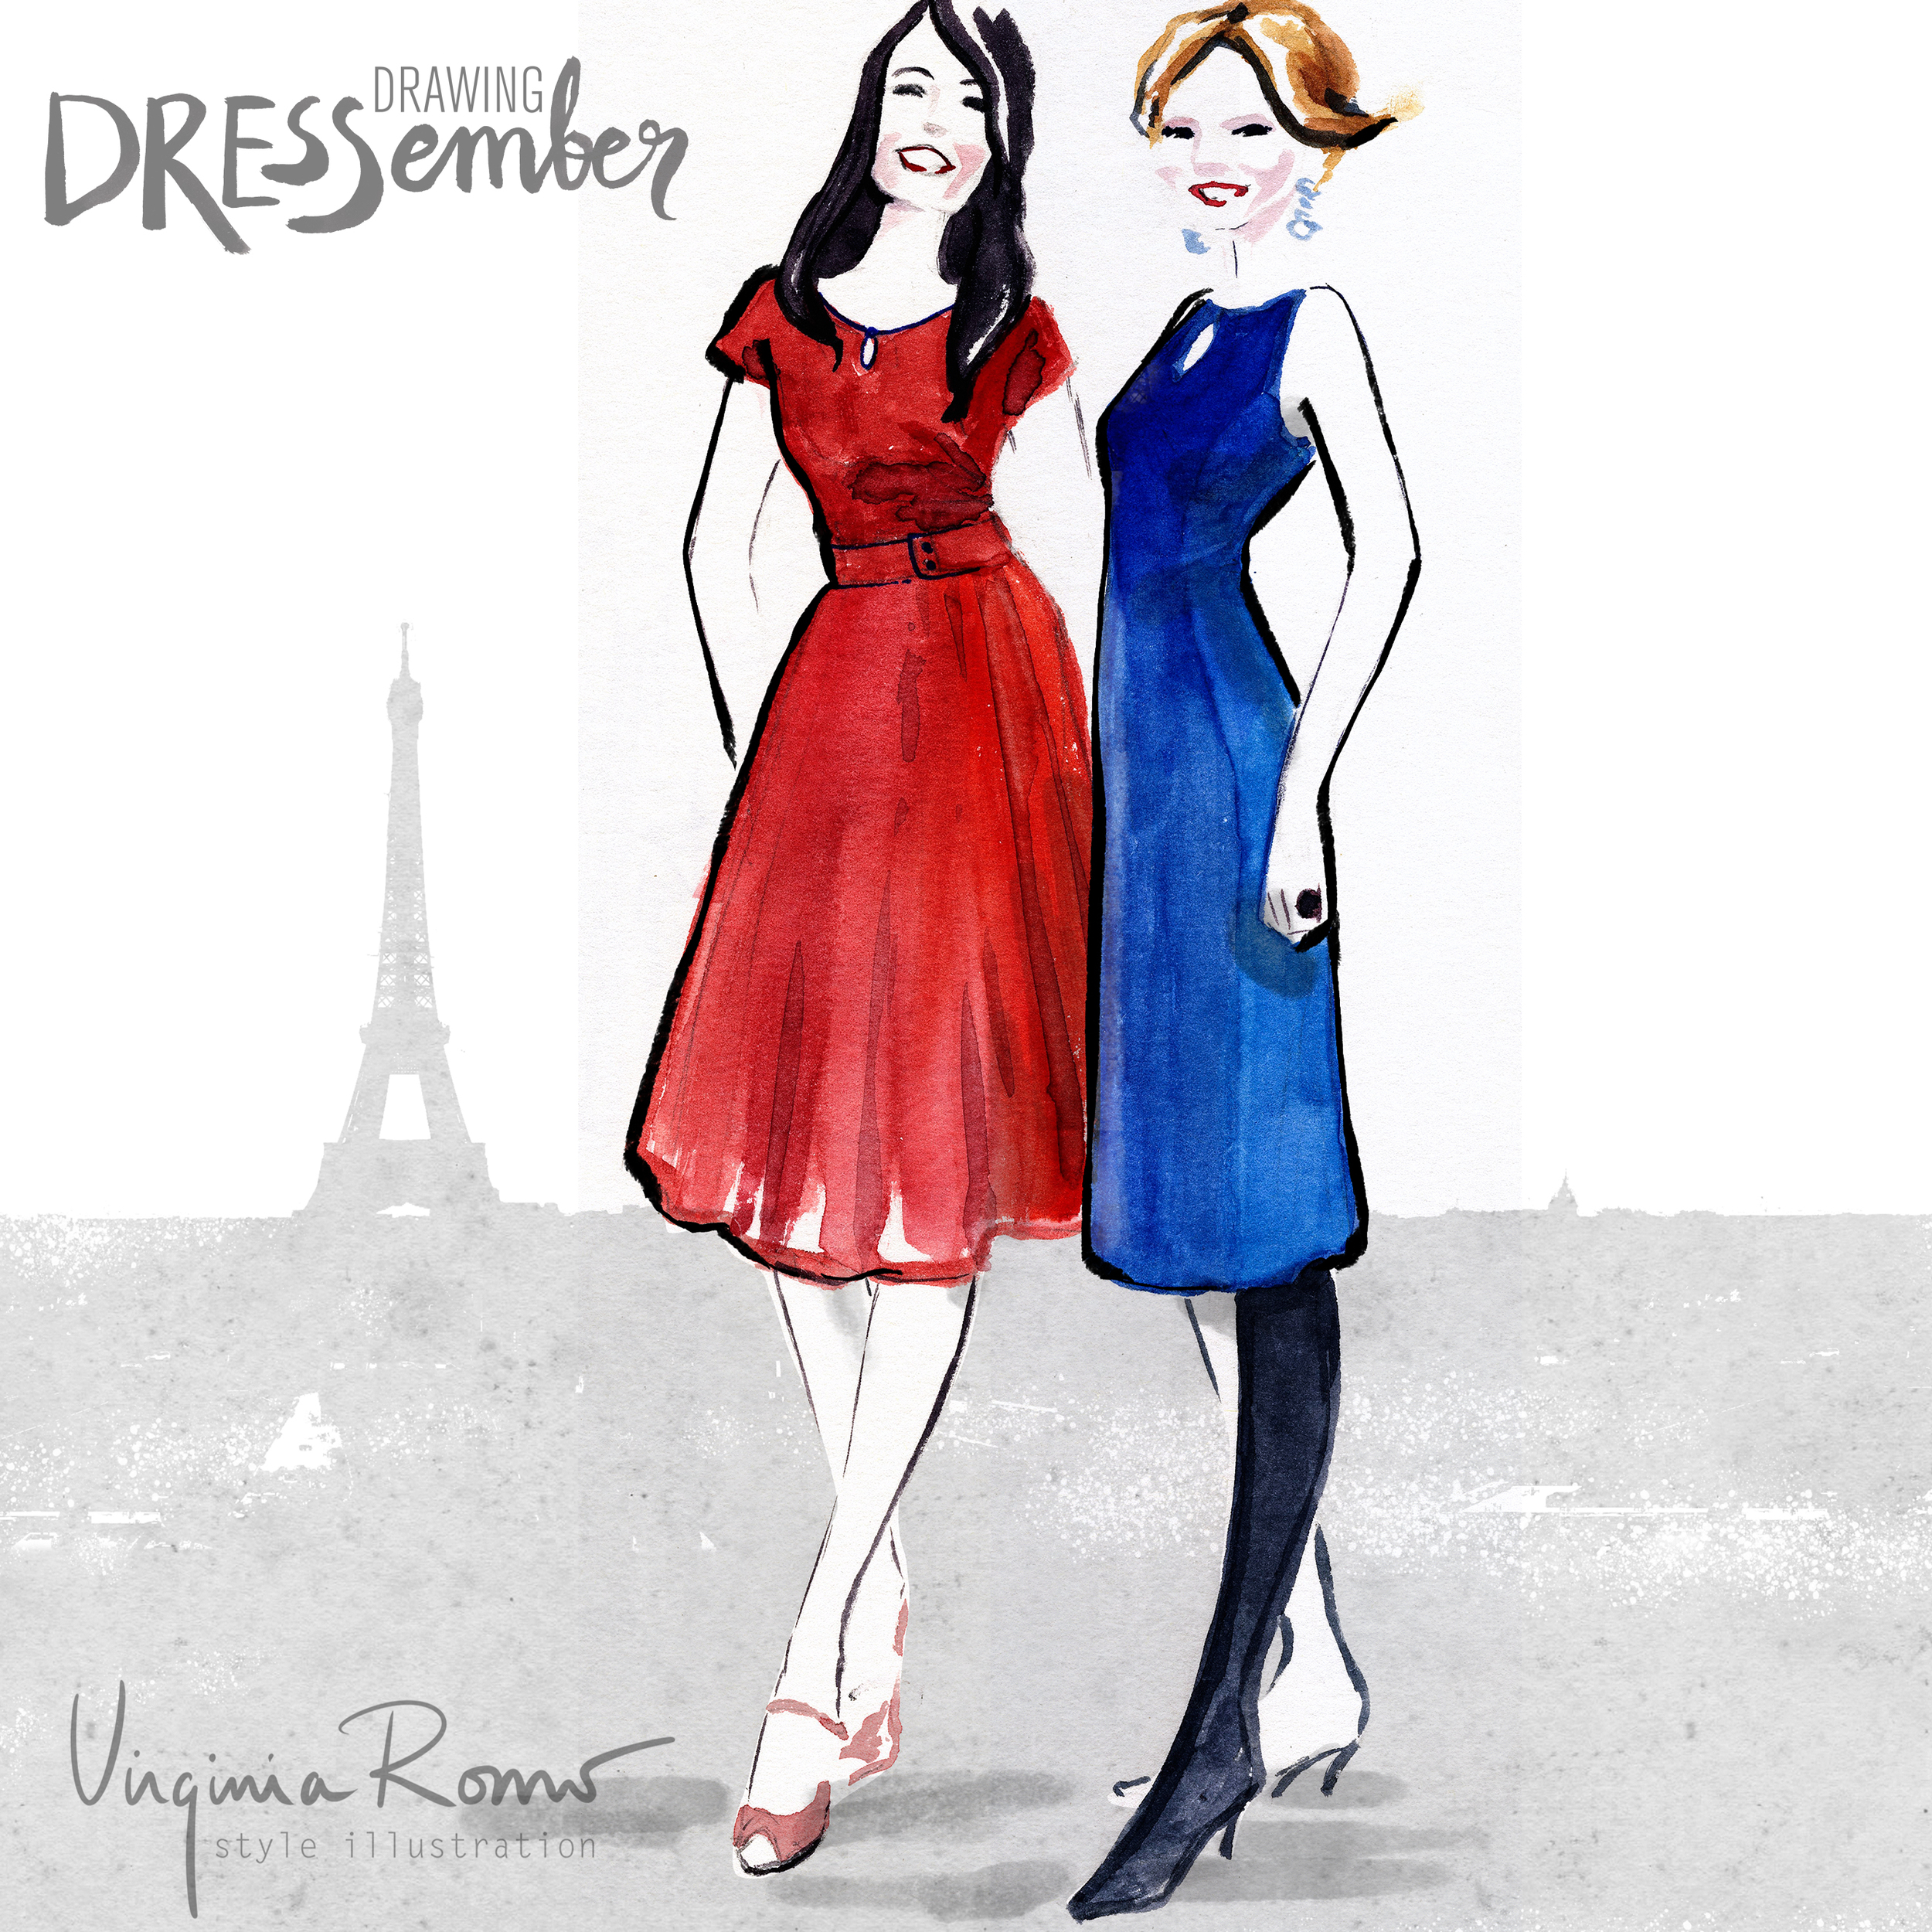 dressember-VirginiaRomoIllustration-19-Julie-Manue-IG.jpg